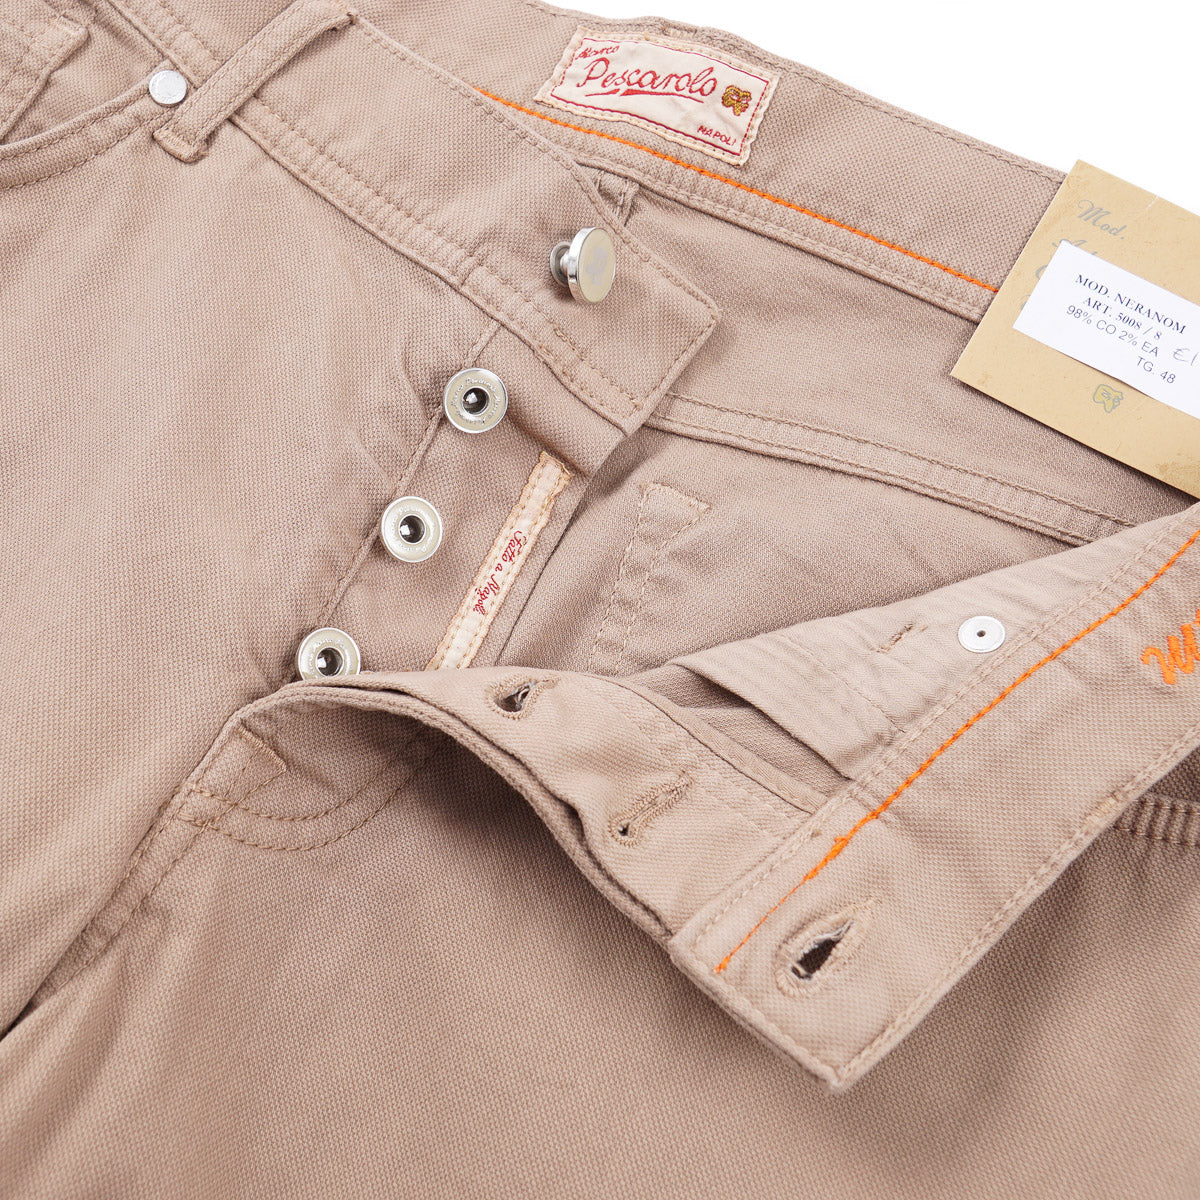 Marco Pescarolo 5-Pocket Cotton Pants - Top Shelf Apparel